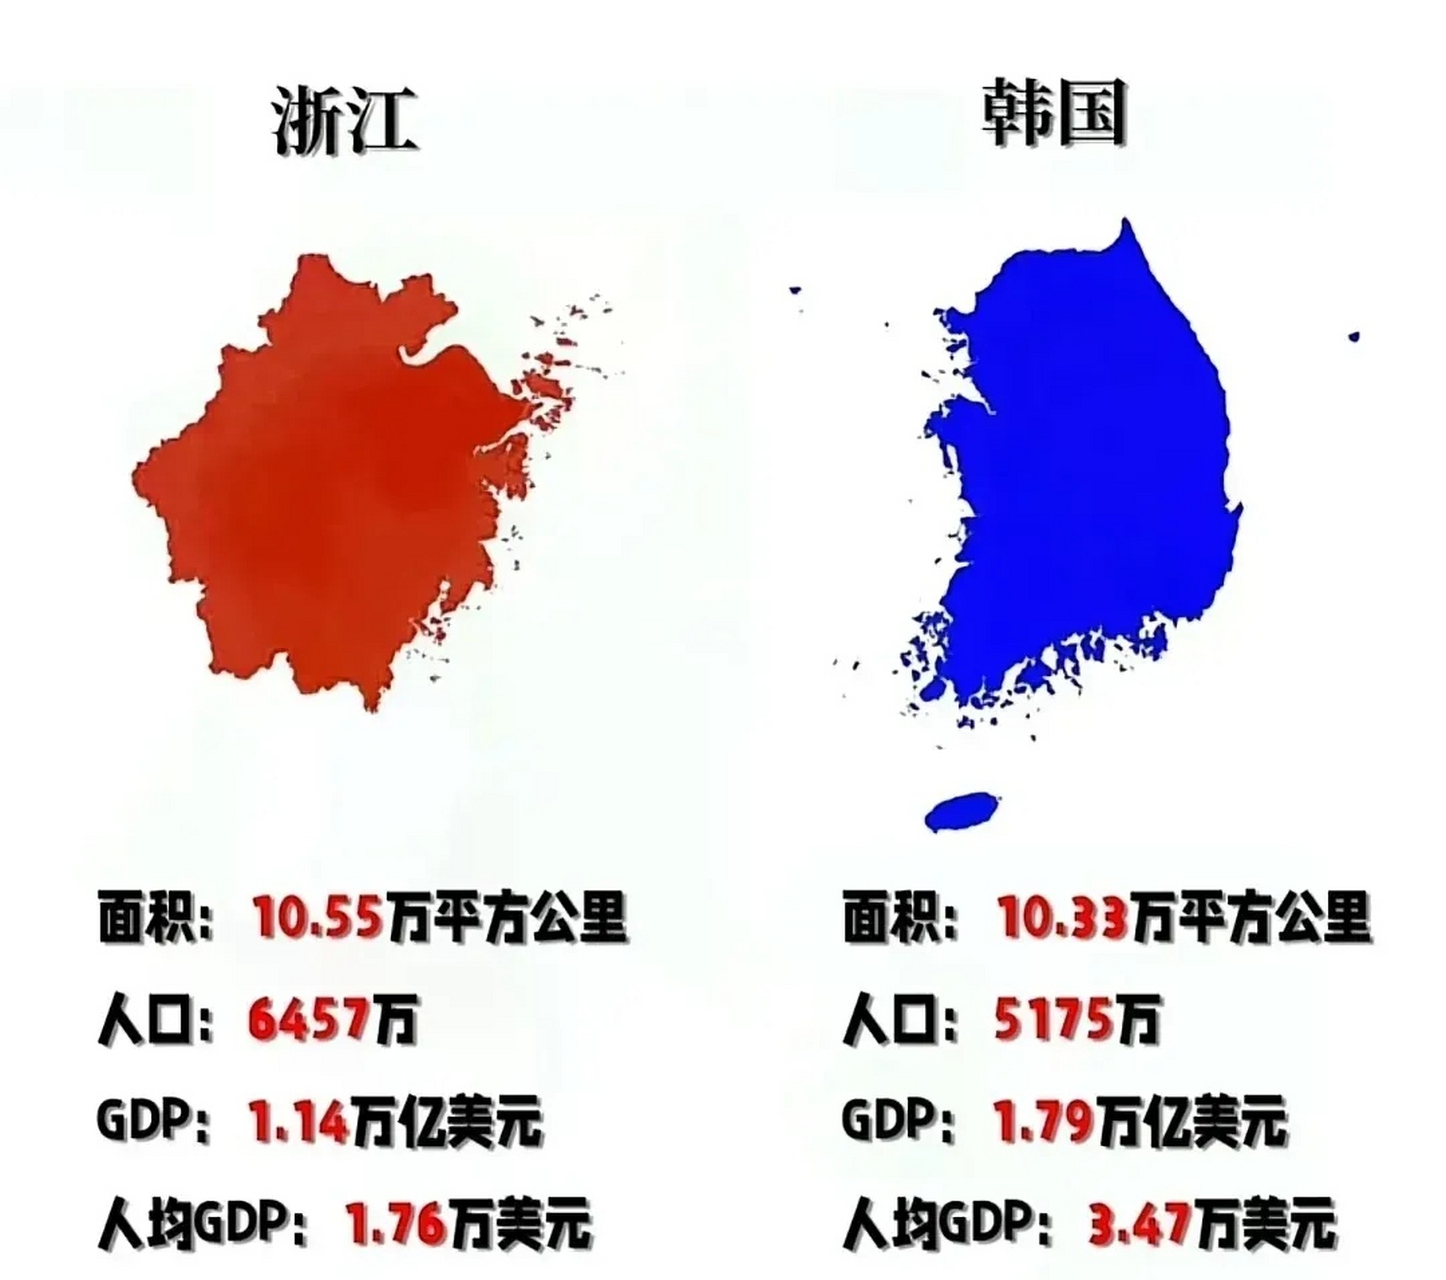 浙江与韩国面积相当,人口多出了1300万,但人均gdp只有对方的一半